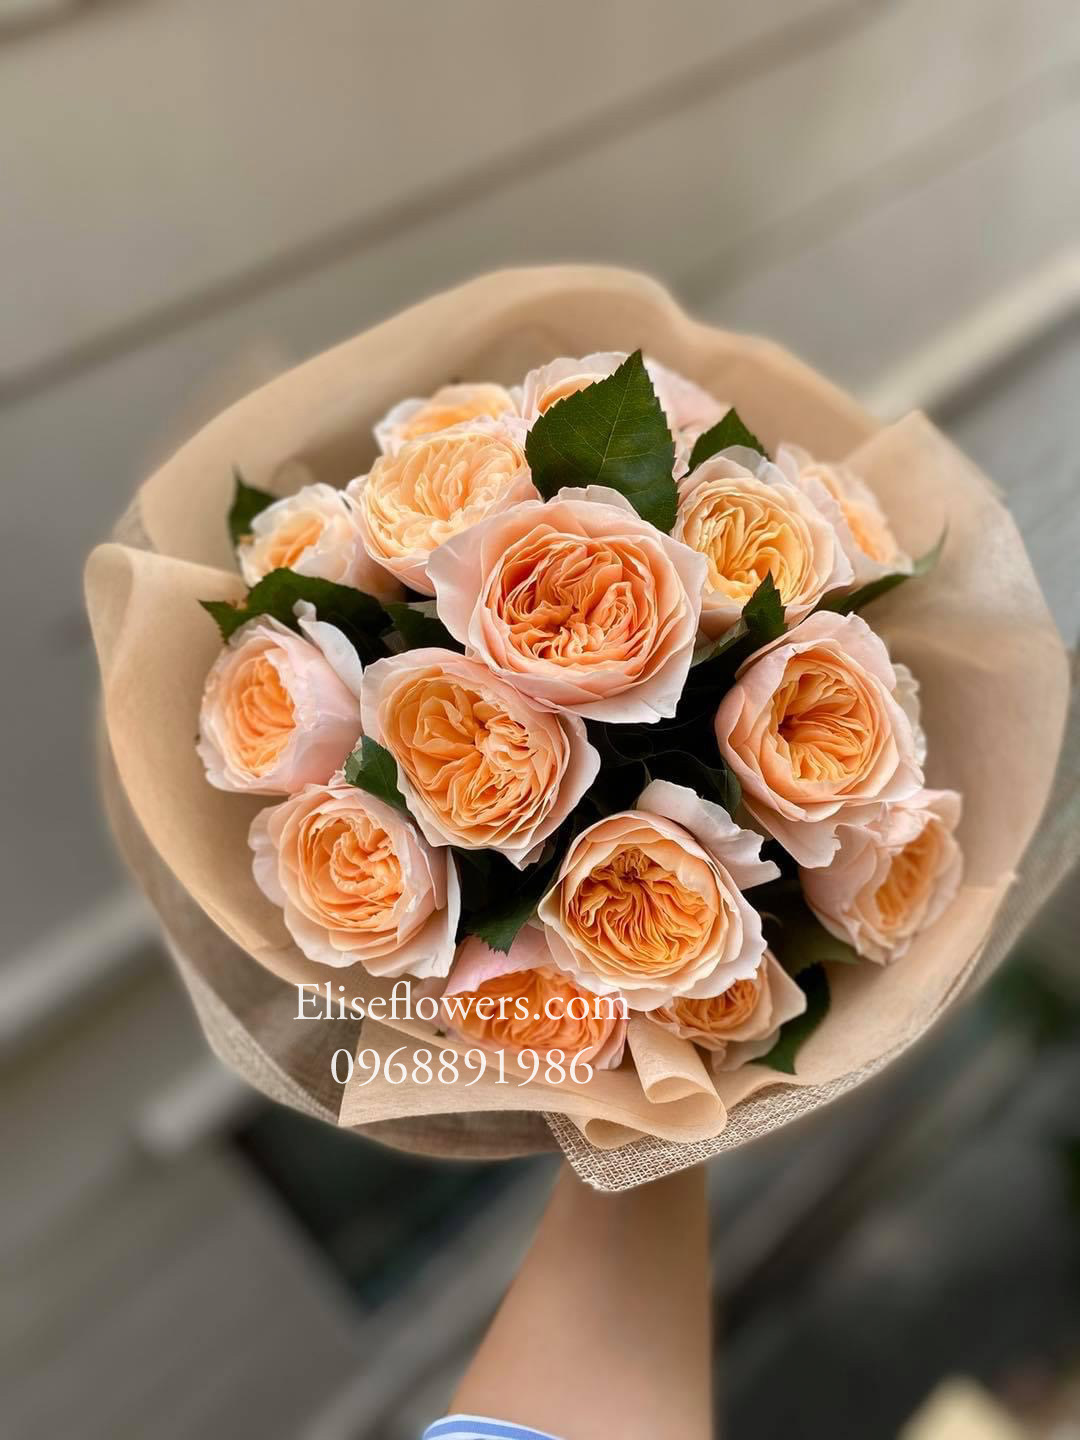 Hình ảnh hoa hồng Juliet | Bó hoa hồng Juliet tại tiệm hoa Eliseflowers 